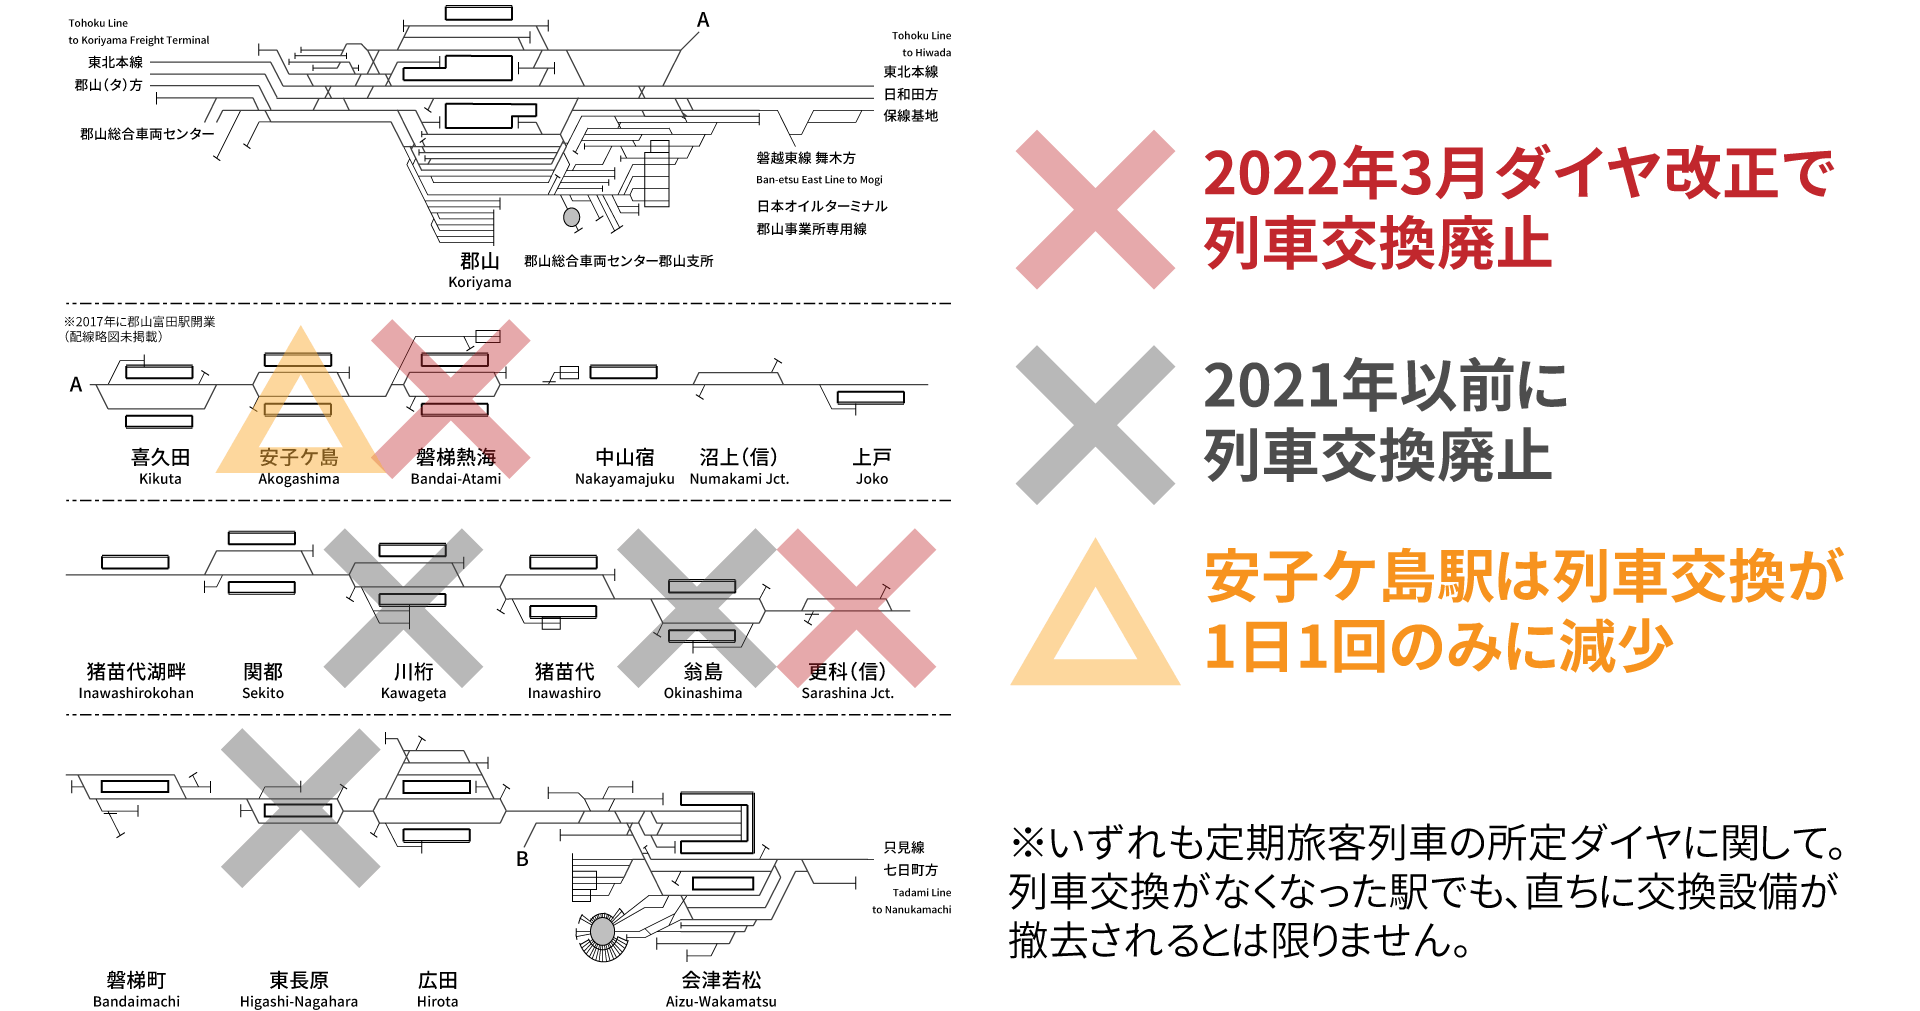 【2022年3月ダイヤ改正】JR東日本管内の列車交換がなくなる交換駅